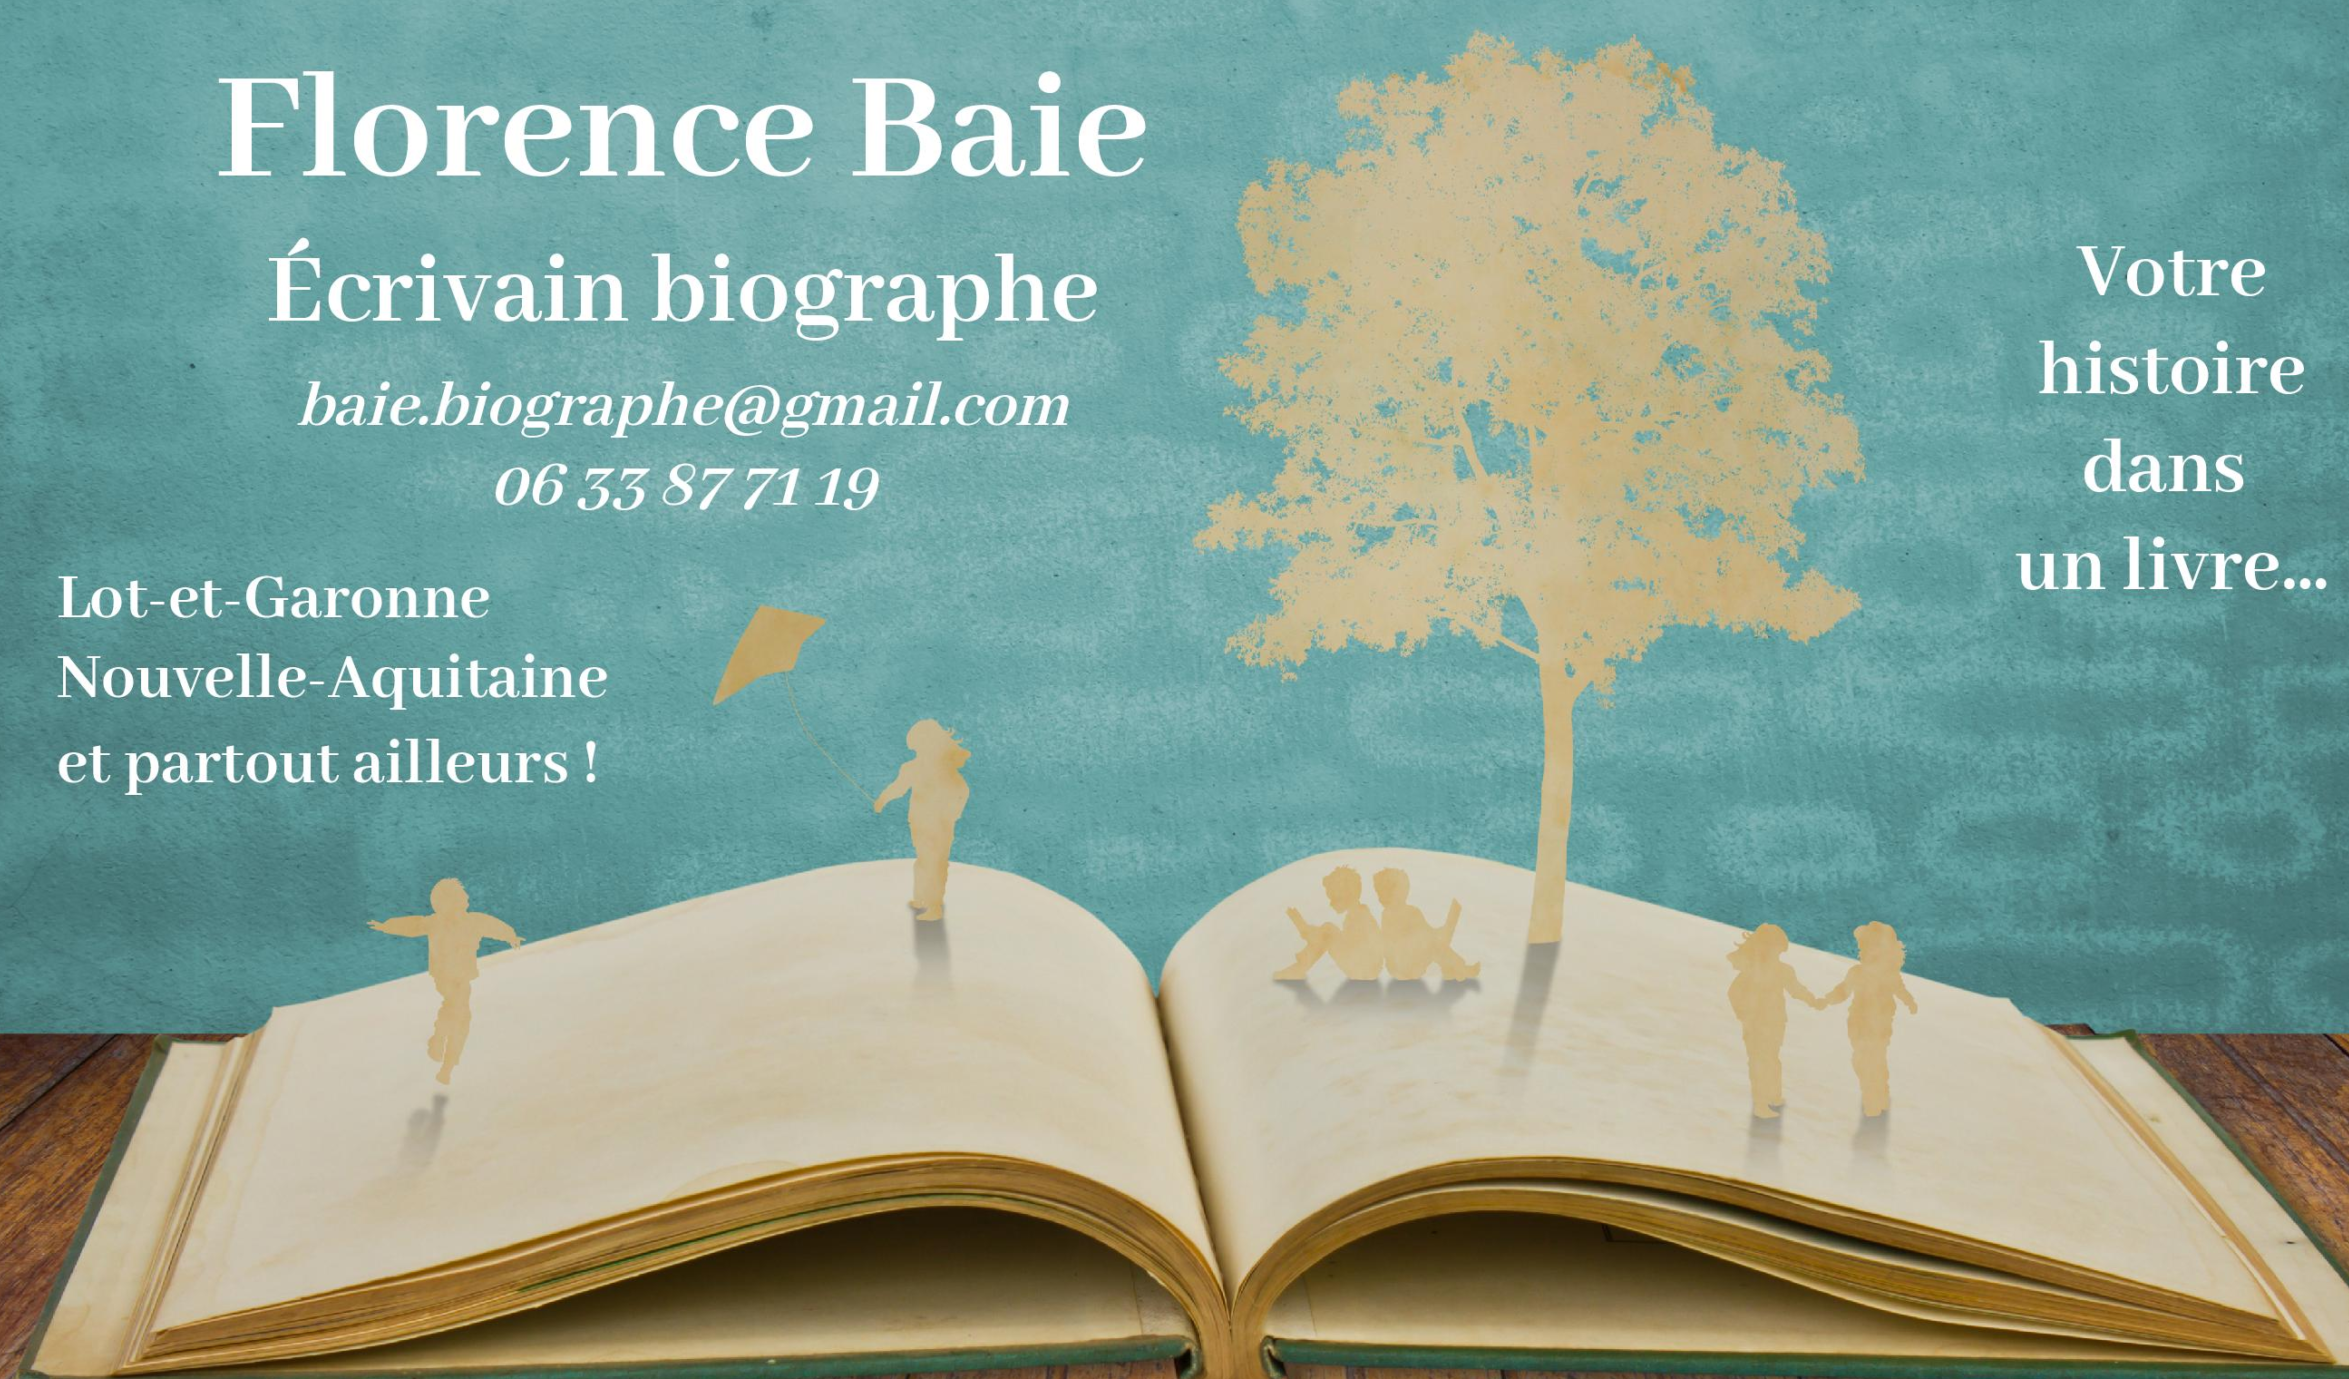 Carte de visite - Florence Baie - Lot-et-Garonne - Votre histoire dans un livre-page-001-modified